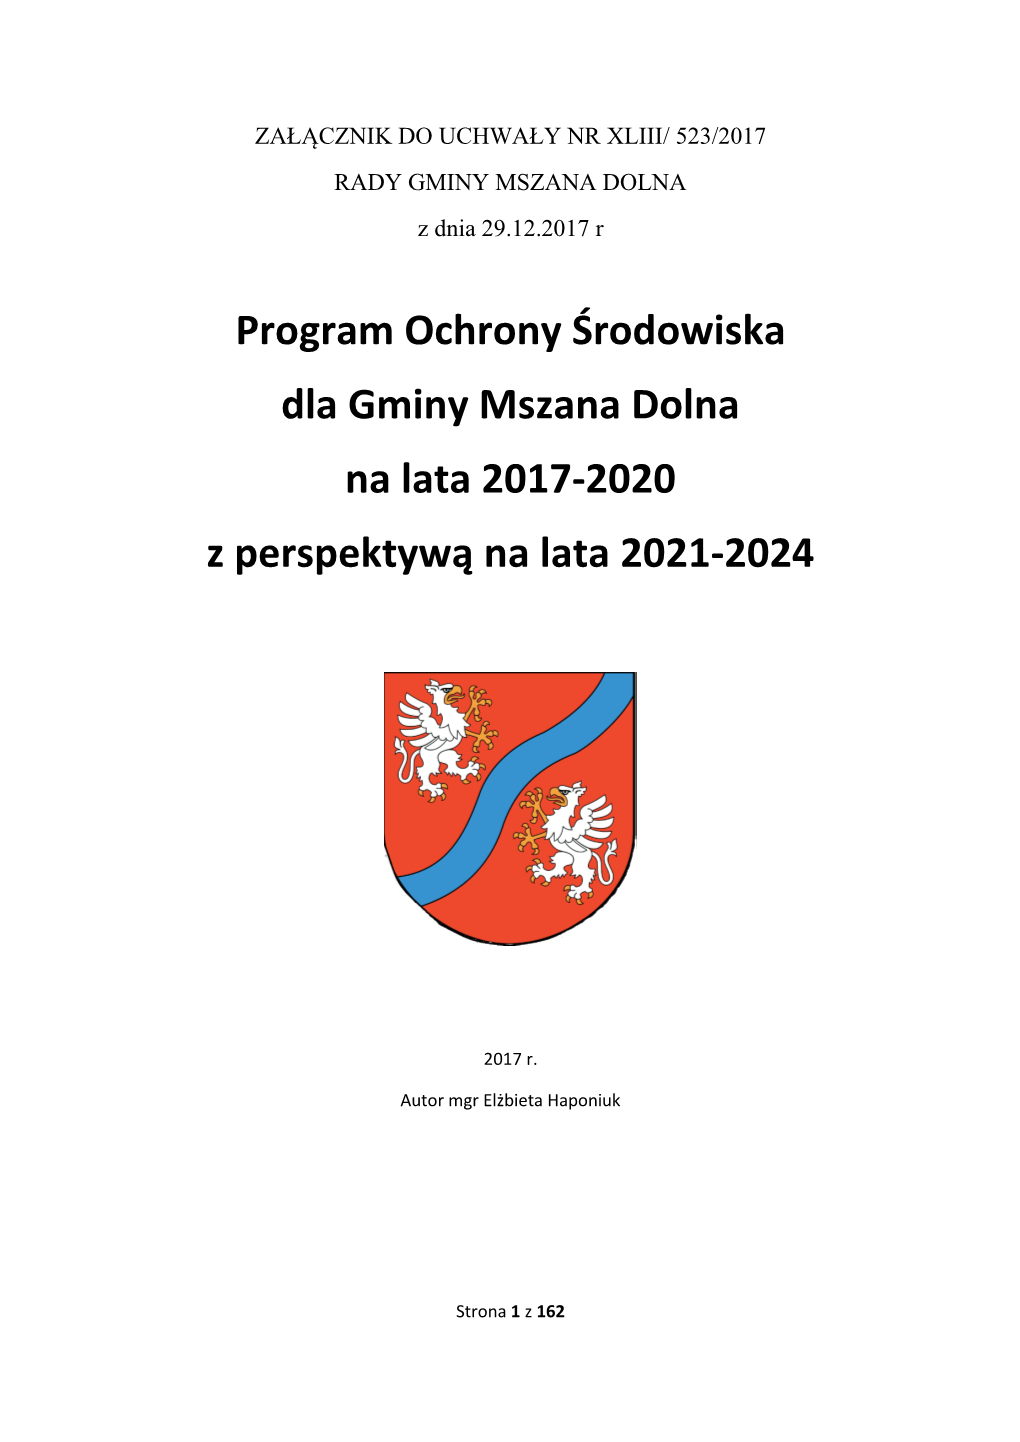 Program Ochrony Środowiska Dla Gminy Mszana Dolna Na Lata 2017-2020 Z Perspektywą Na Lata 2021-2024